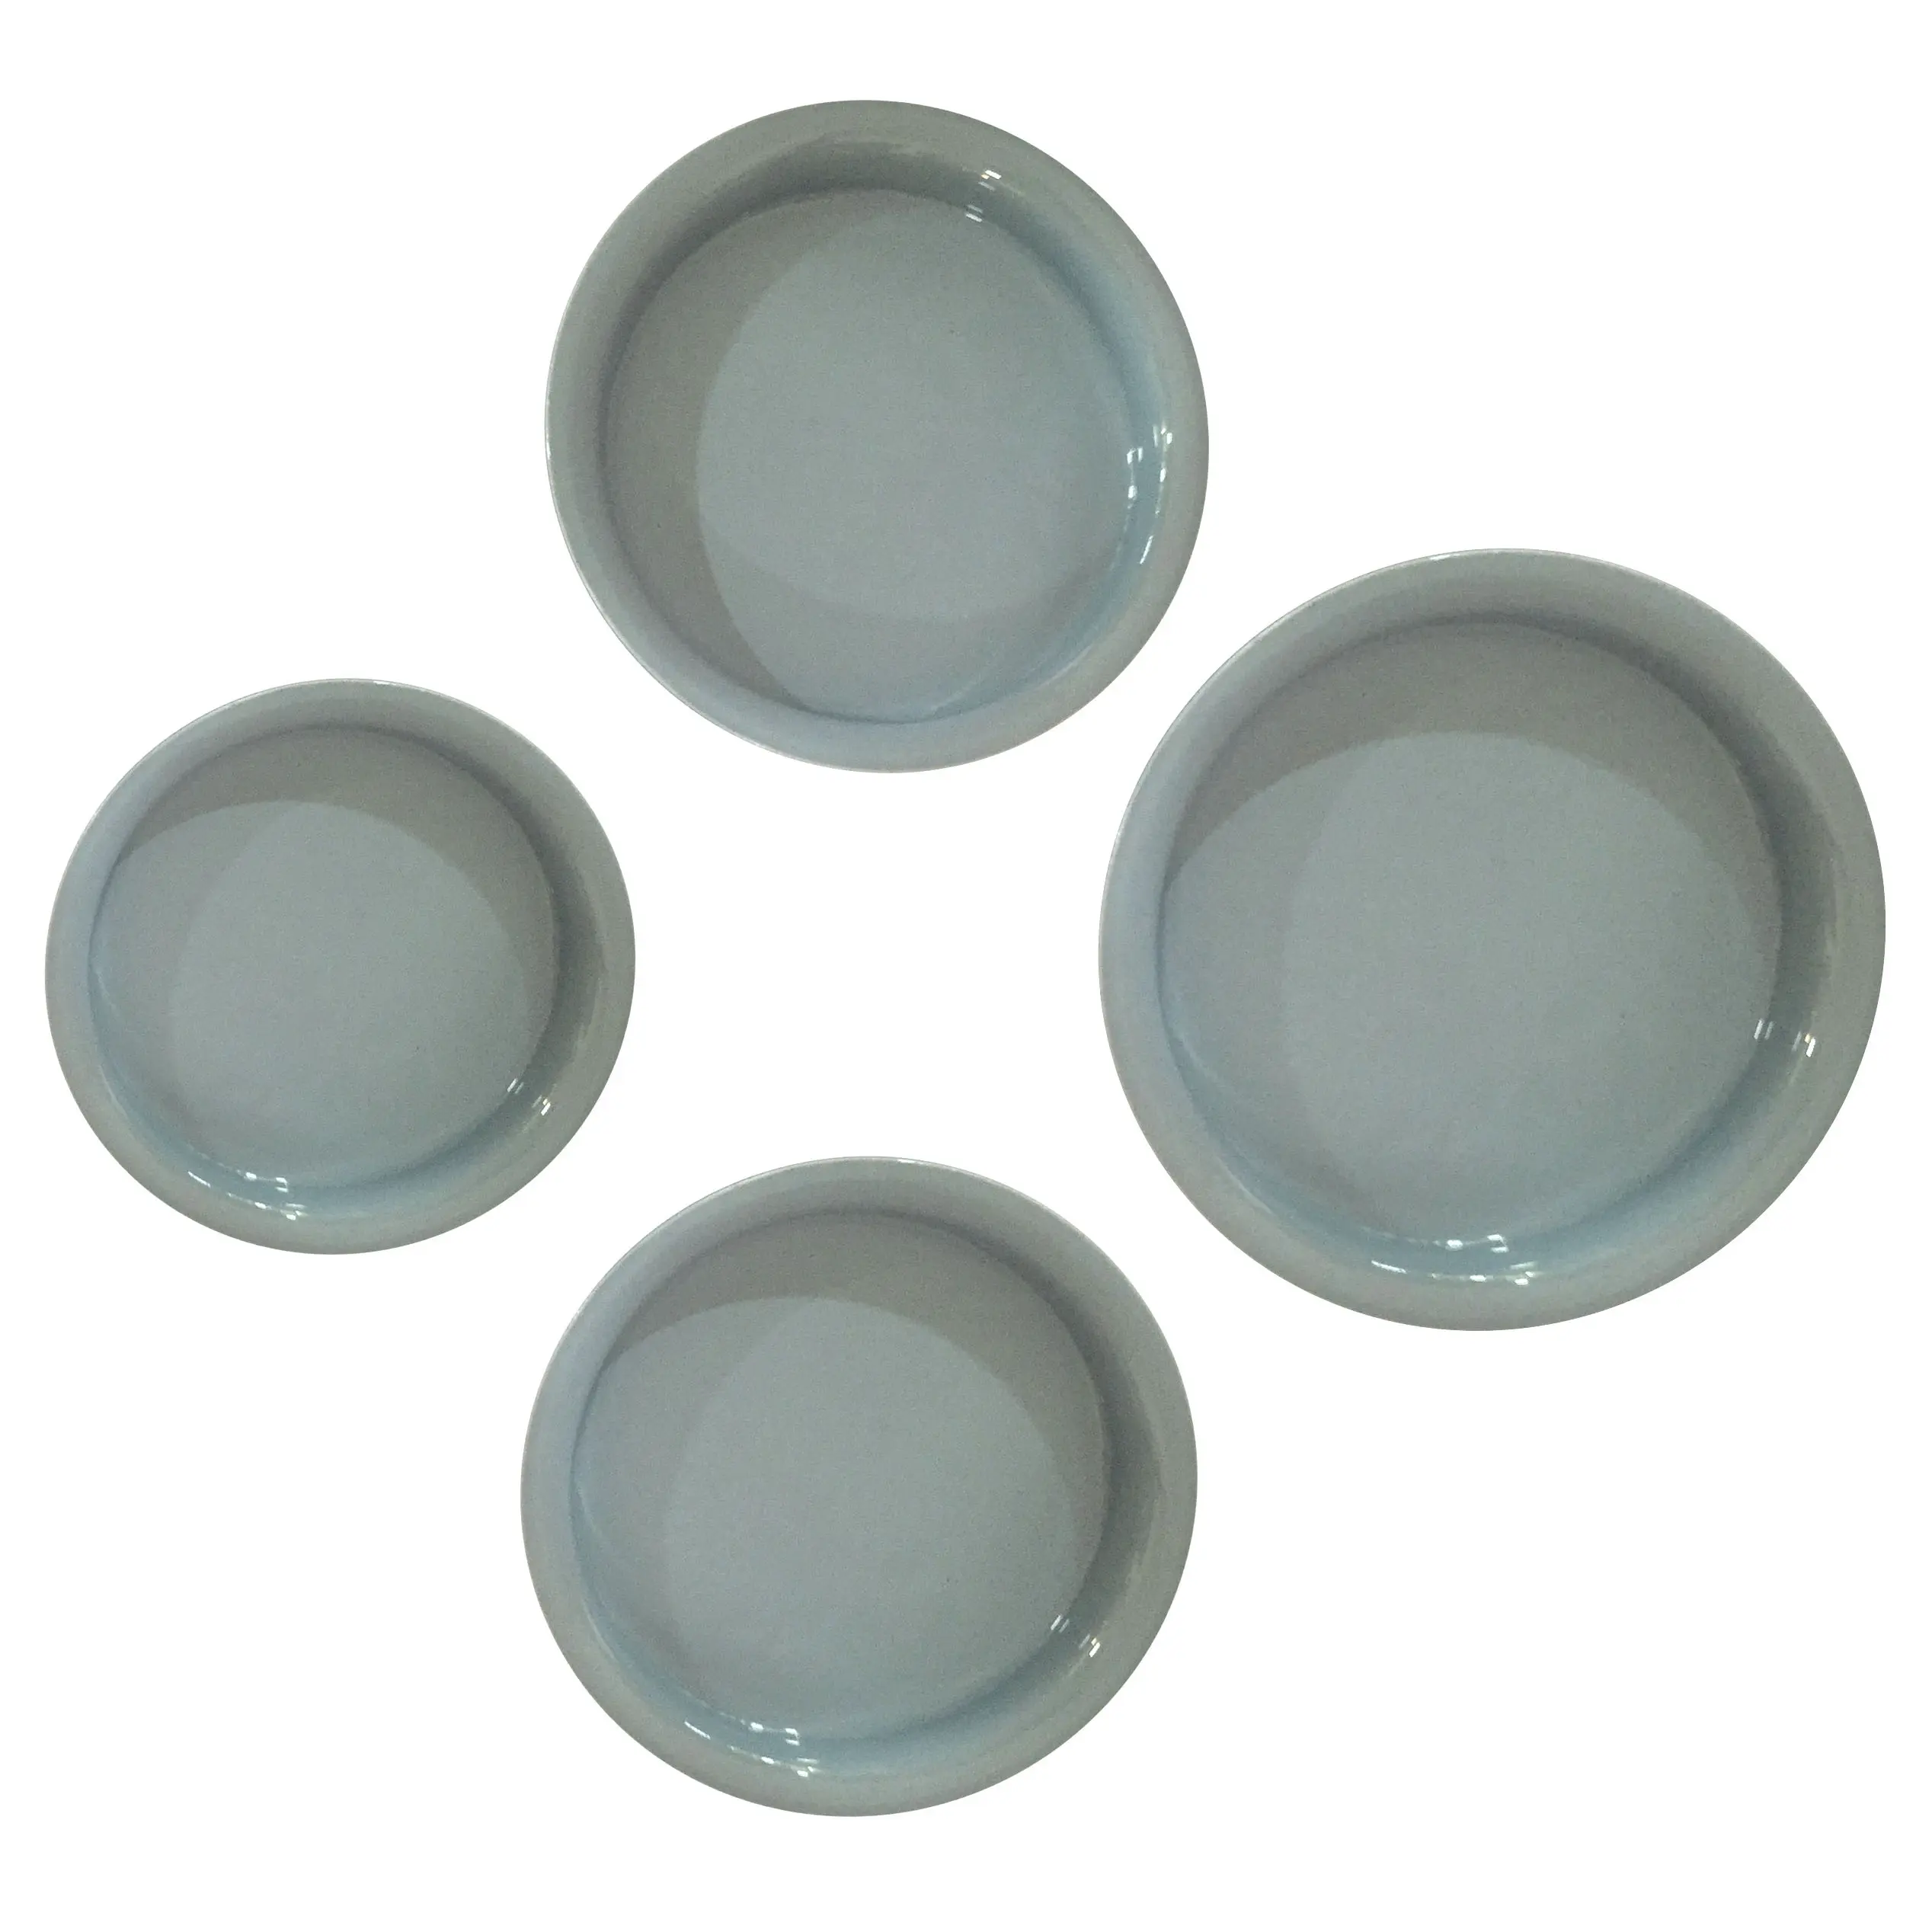 Облегающего силуэта серого цвета чаши набор тарелок набор из 4 чаша Тарелки и блюда с отлитым в форму хорошее сцепление с поверхностью границы проектирования